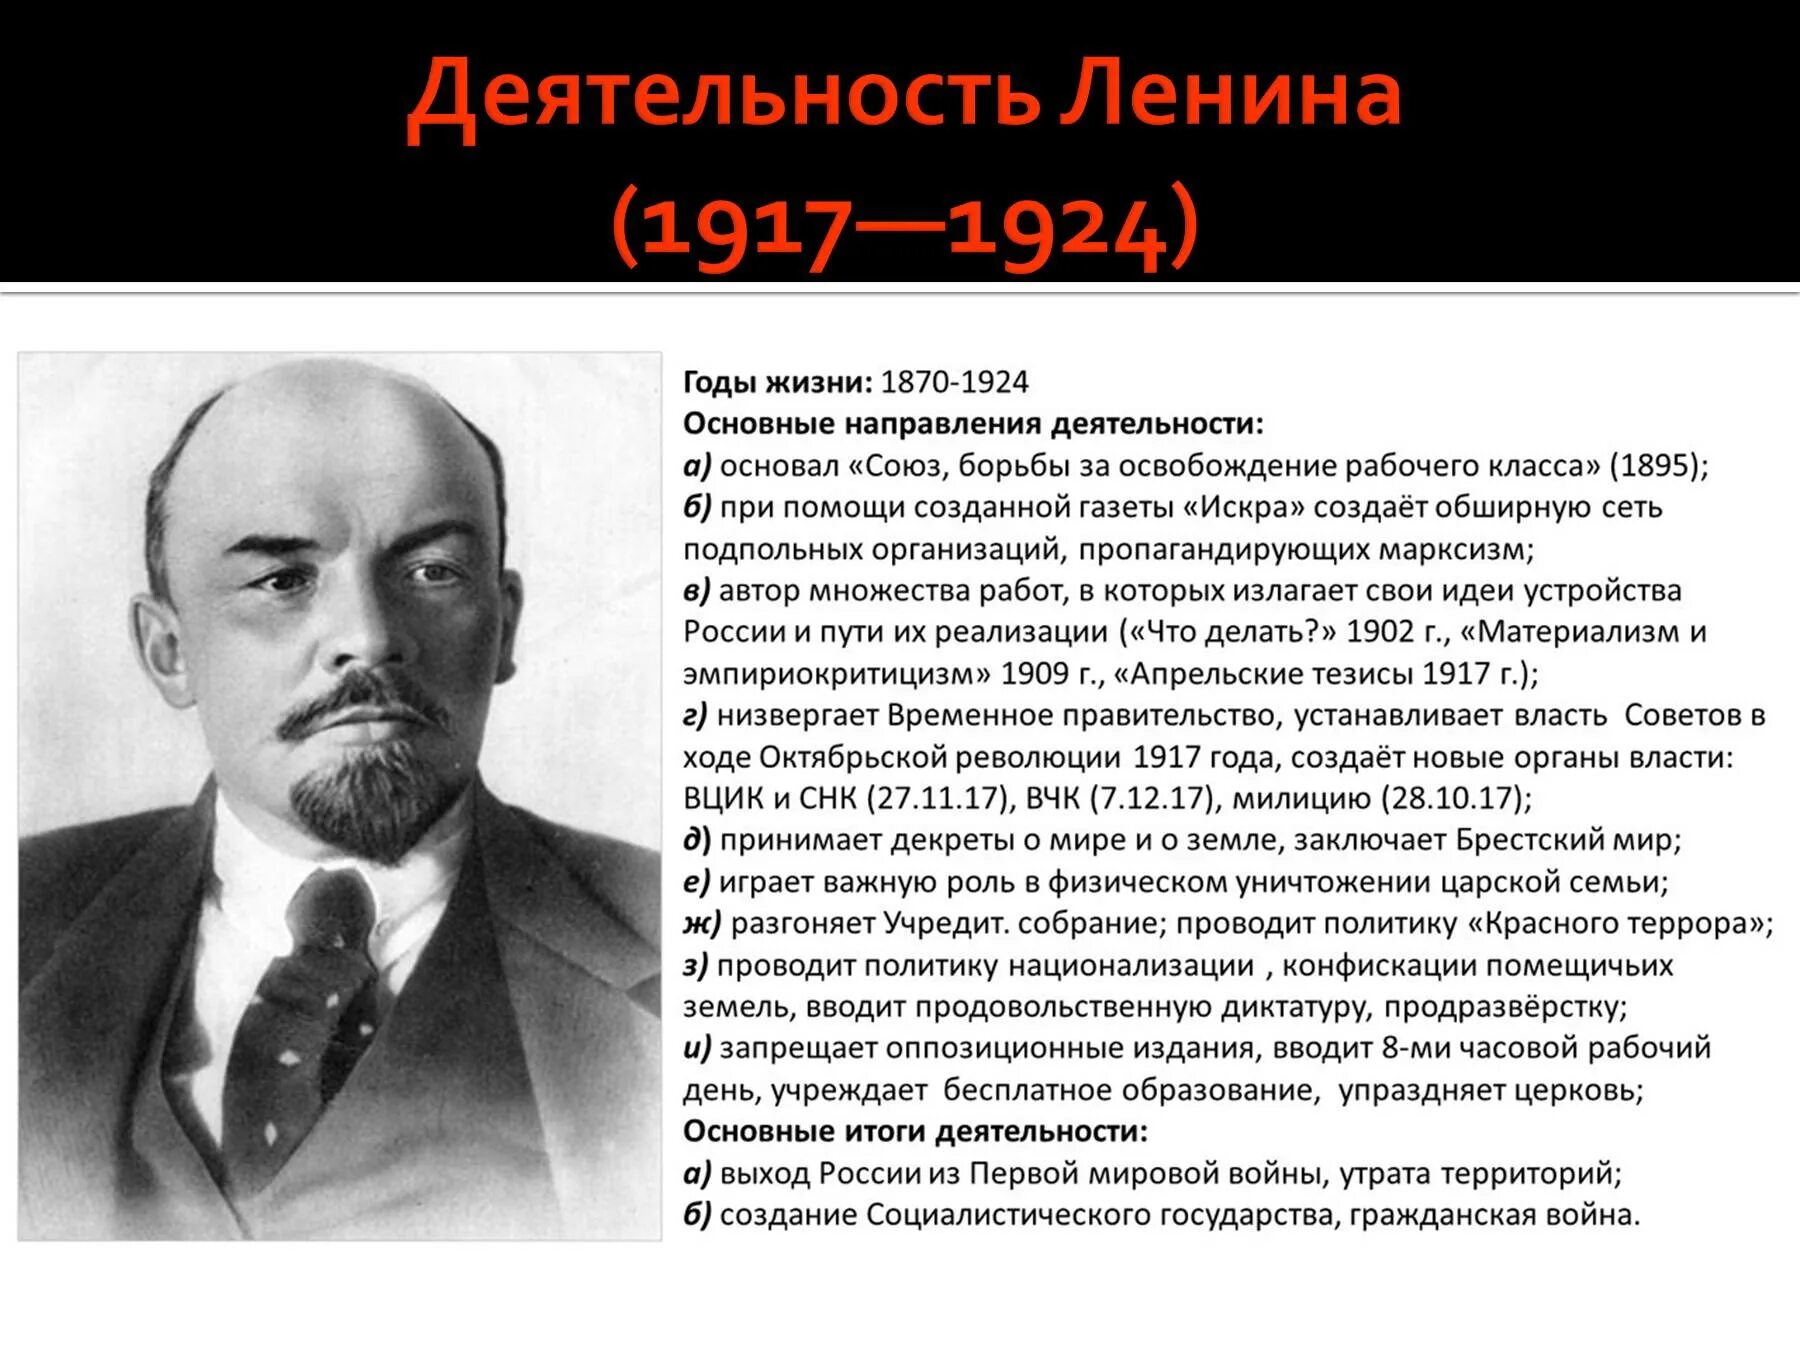 Заслуги ленина. Деятельность Ленина в 1917 году. Исторический портрет Ленина 1917 год.